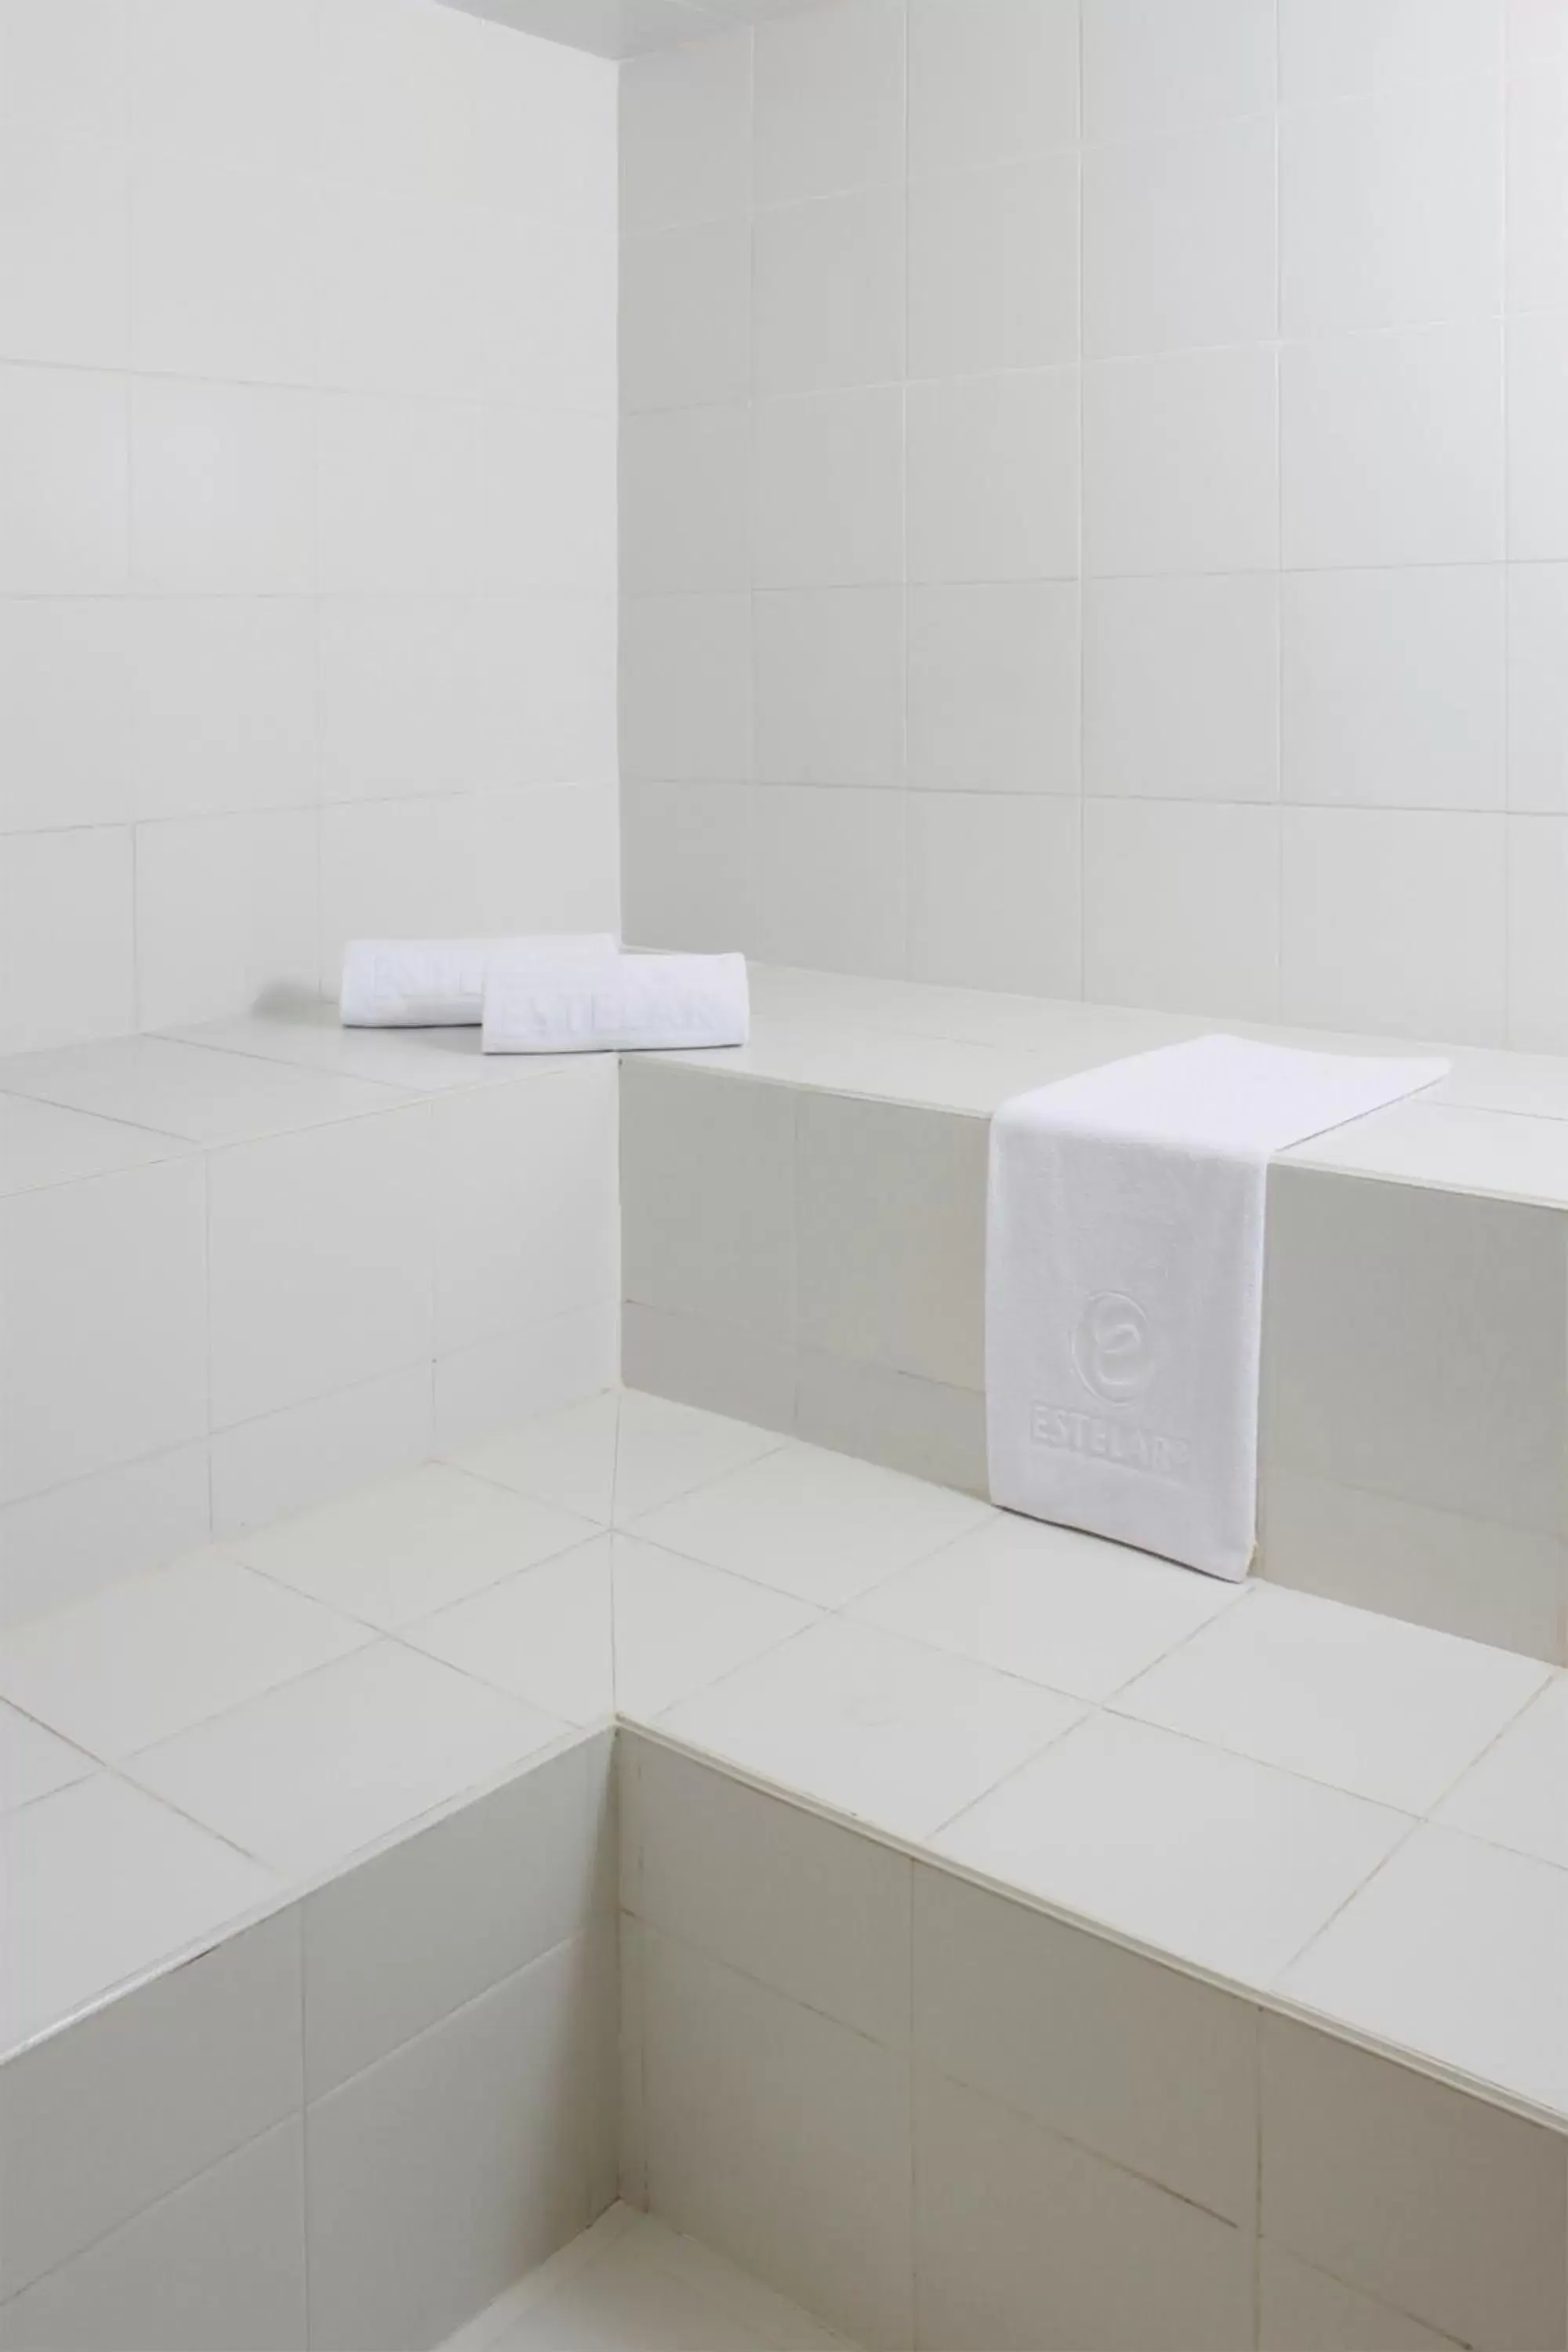 Spa and wellness centre/facilities, Bathroom in Hotel Estelar Milla De Oro